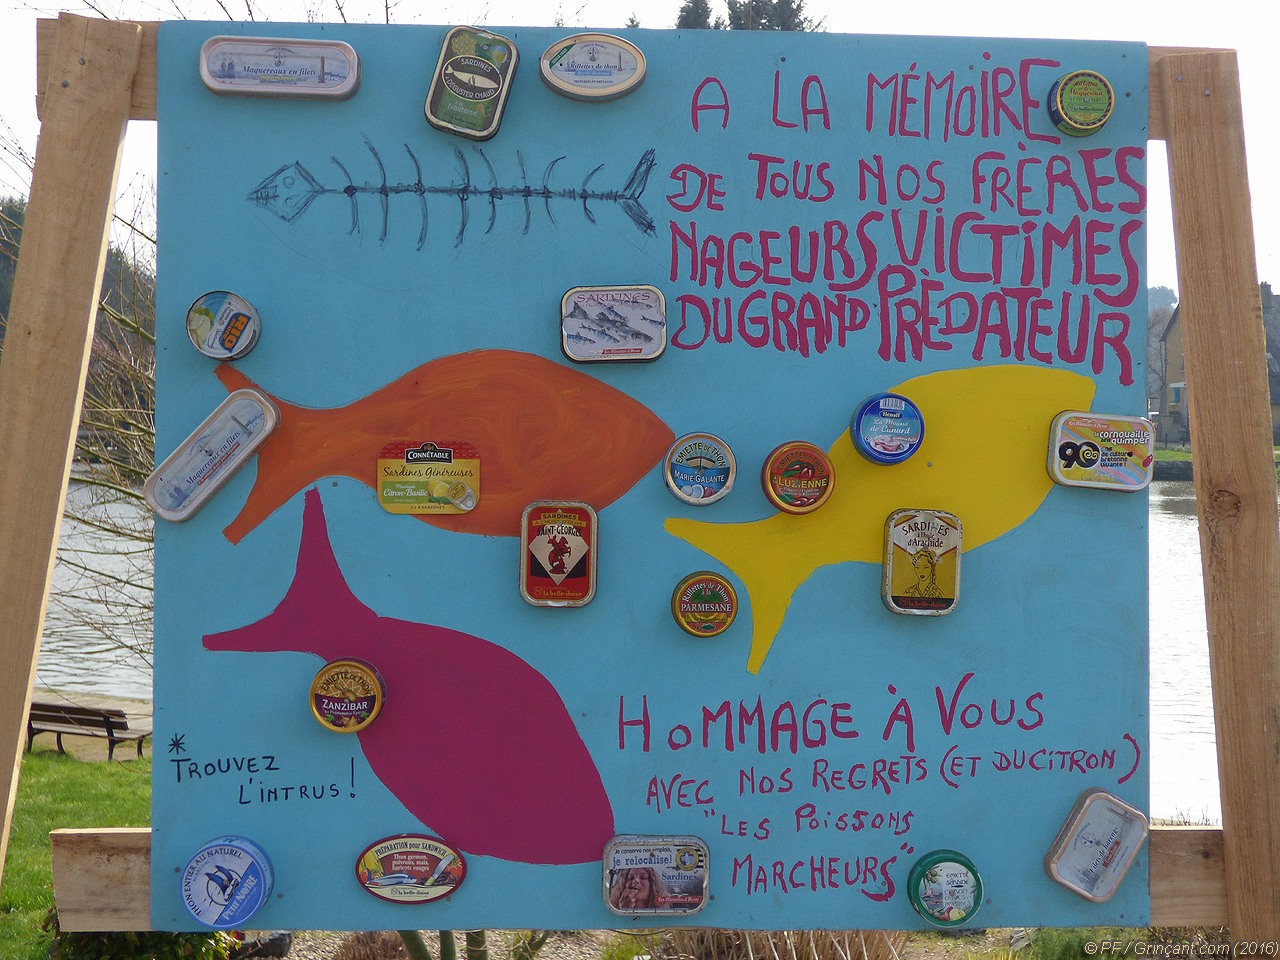 Art de rue & militantisme, panneau « À la mémoire de tous nos frères nageurs victimes du grand prédateur", avec des conserves de poisson